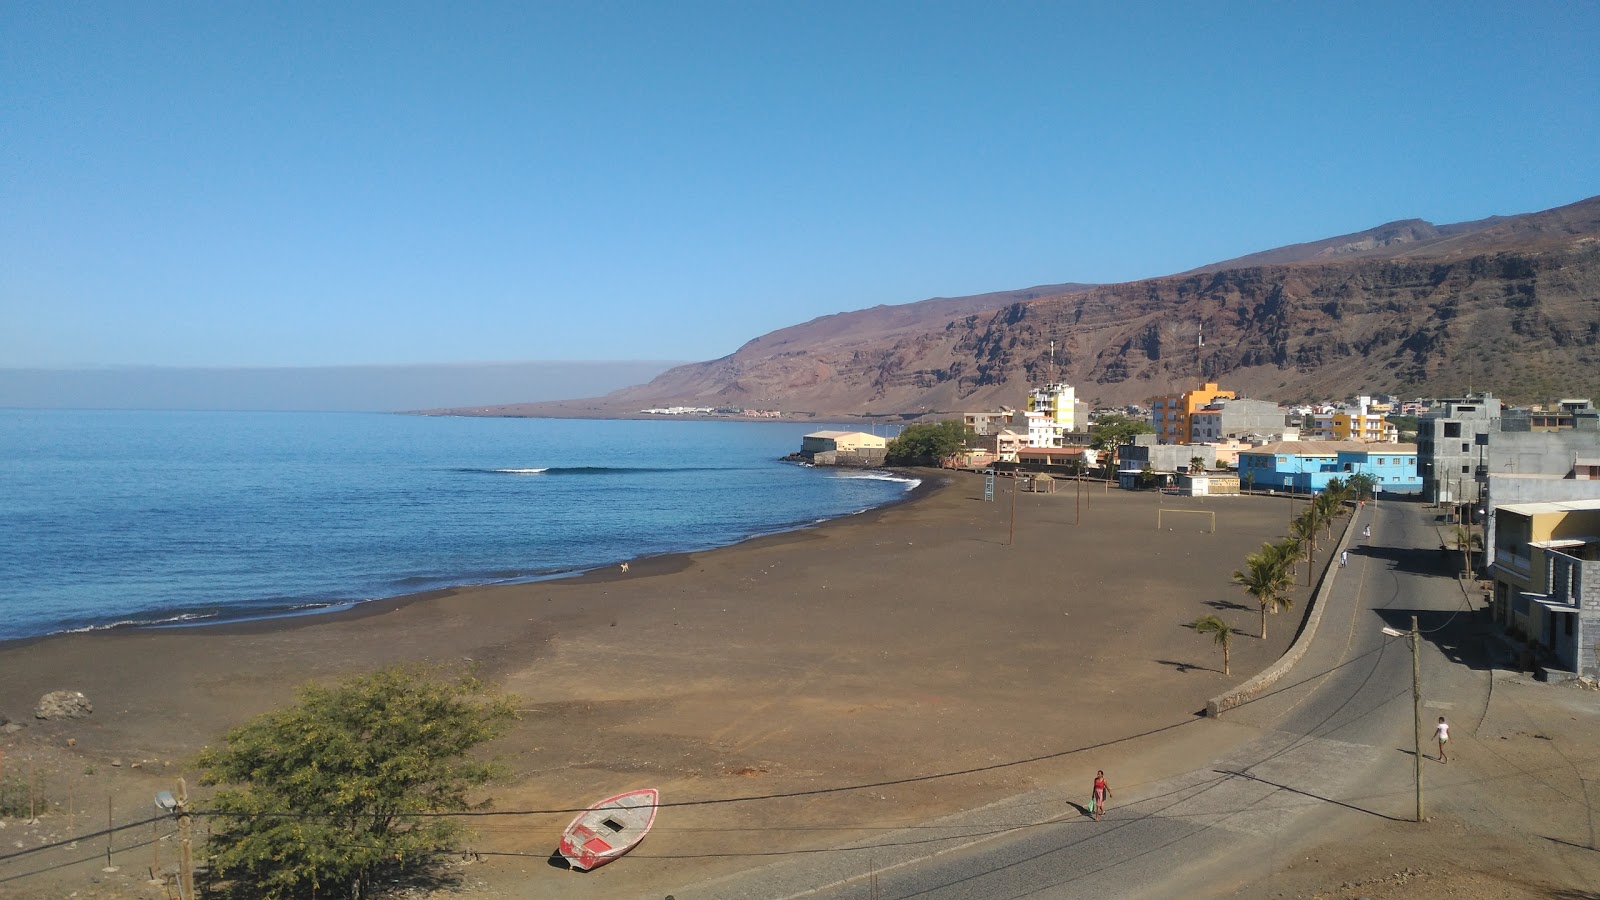 Foto av Praia Tedja med brunsand yta